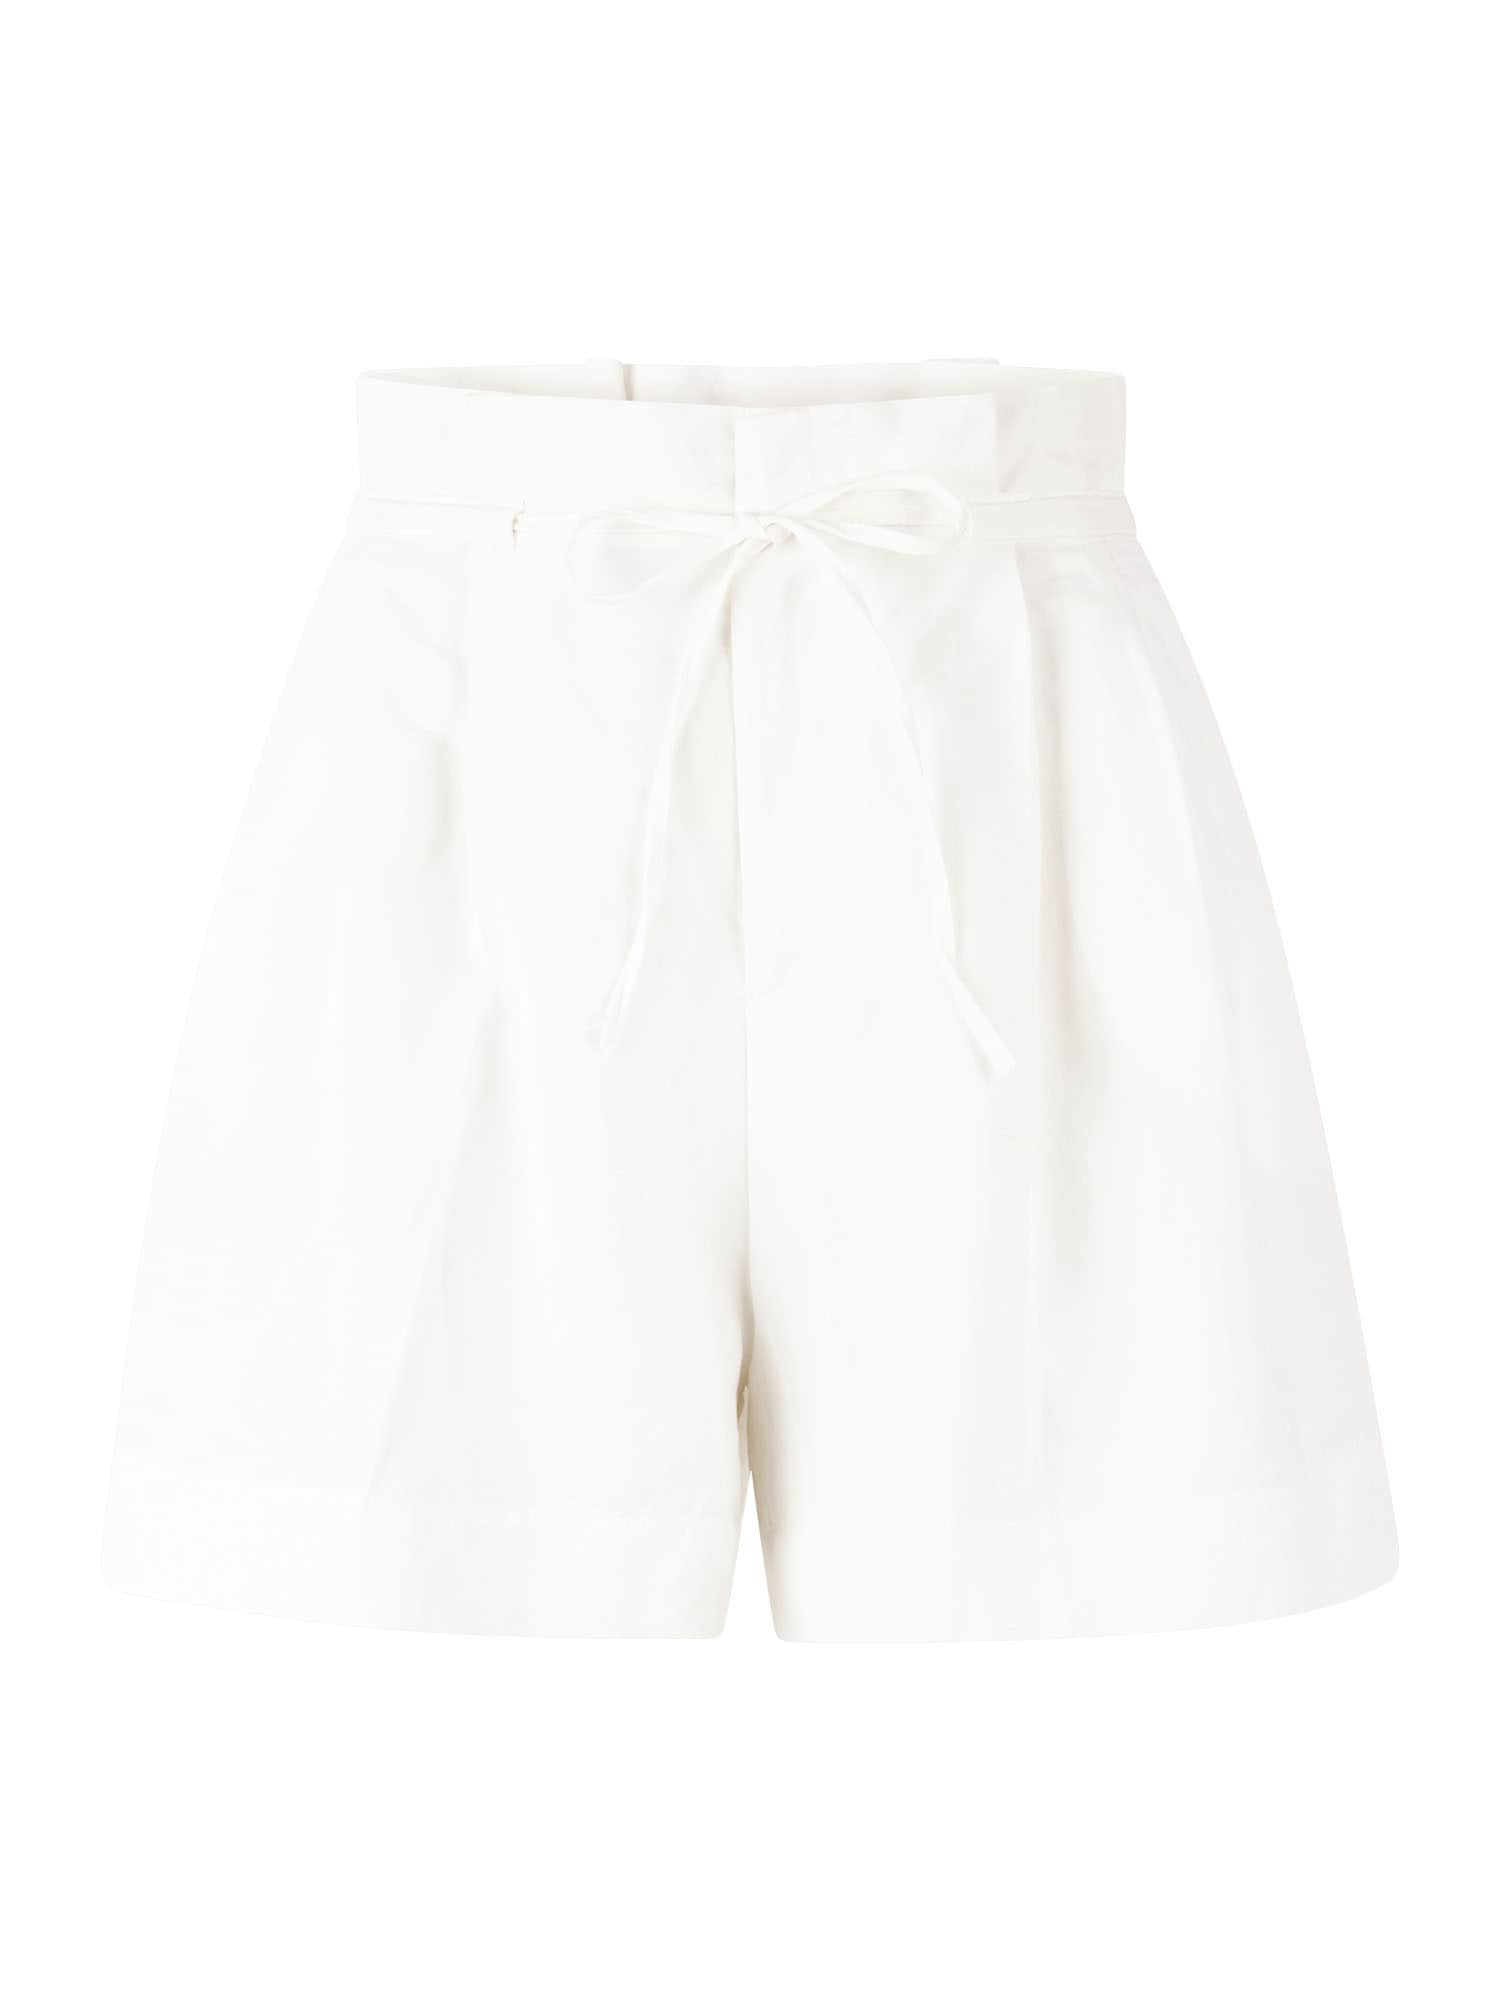 Rich & Royal Élére vasalt nadrágok  fehér